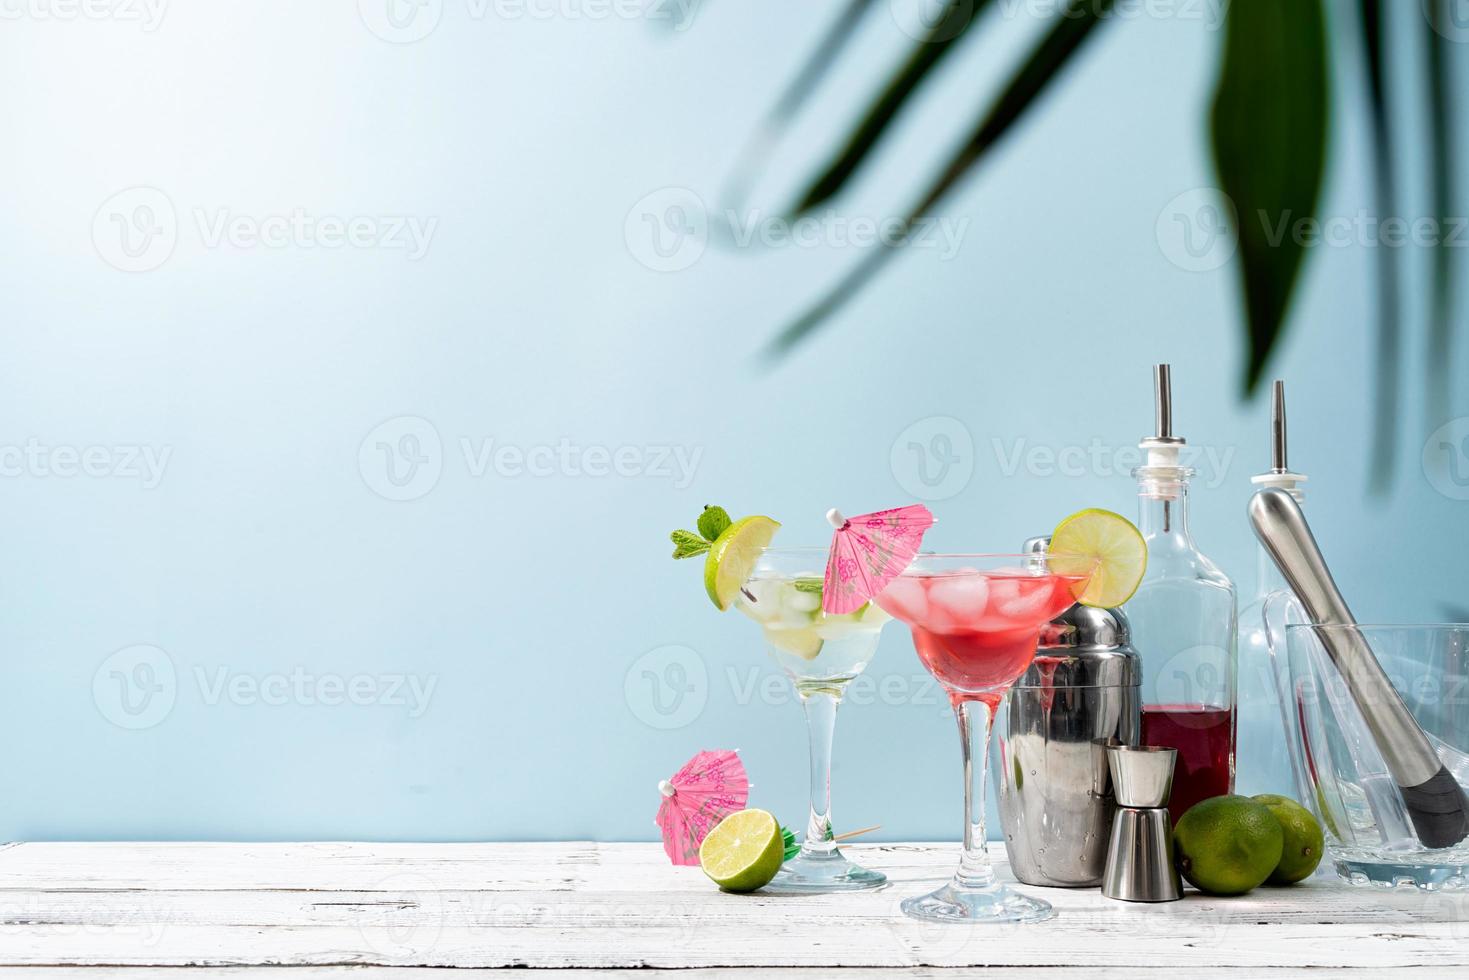 cócteles frescos de verano con cubitos de fresa, lima y hielo sobre fondo azul con espacio para copiar foto